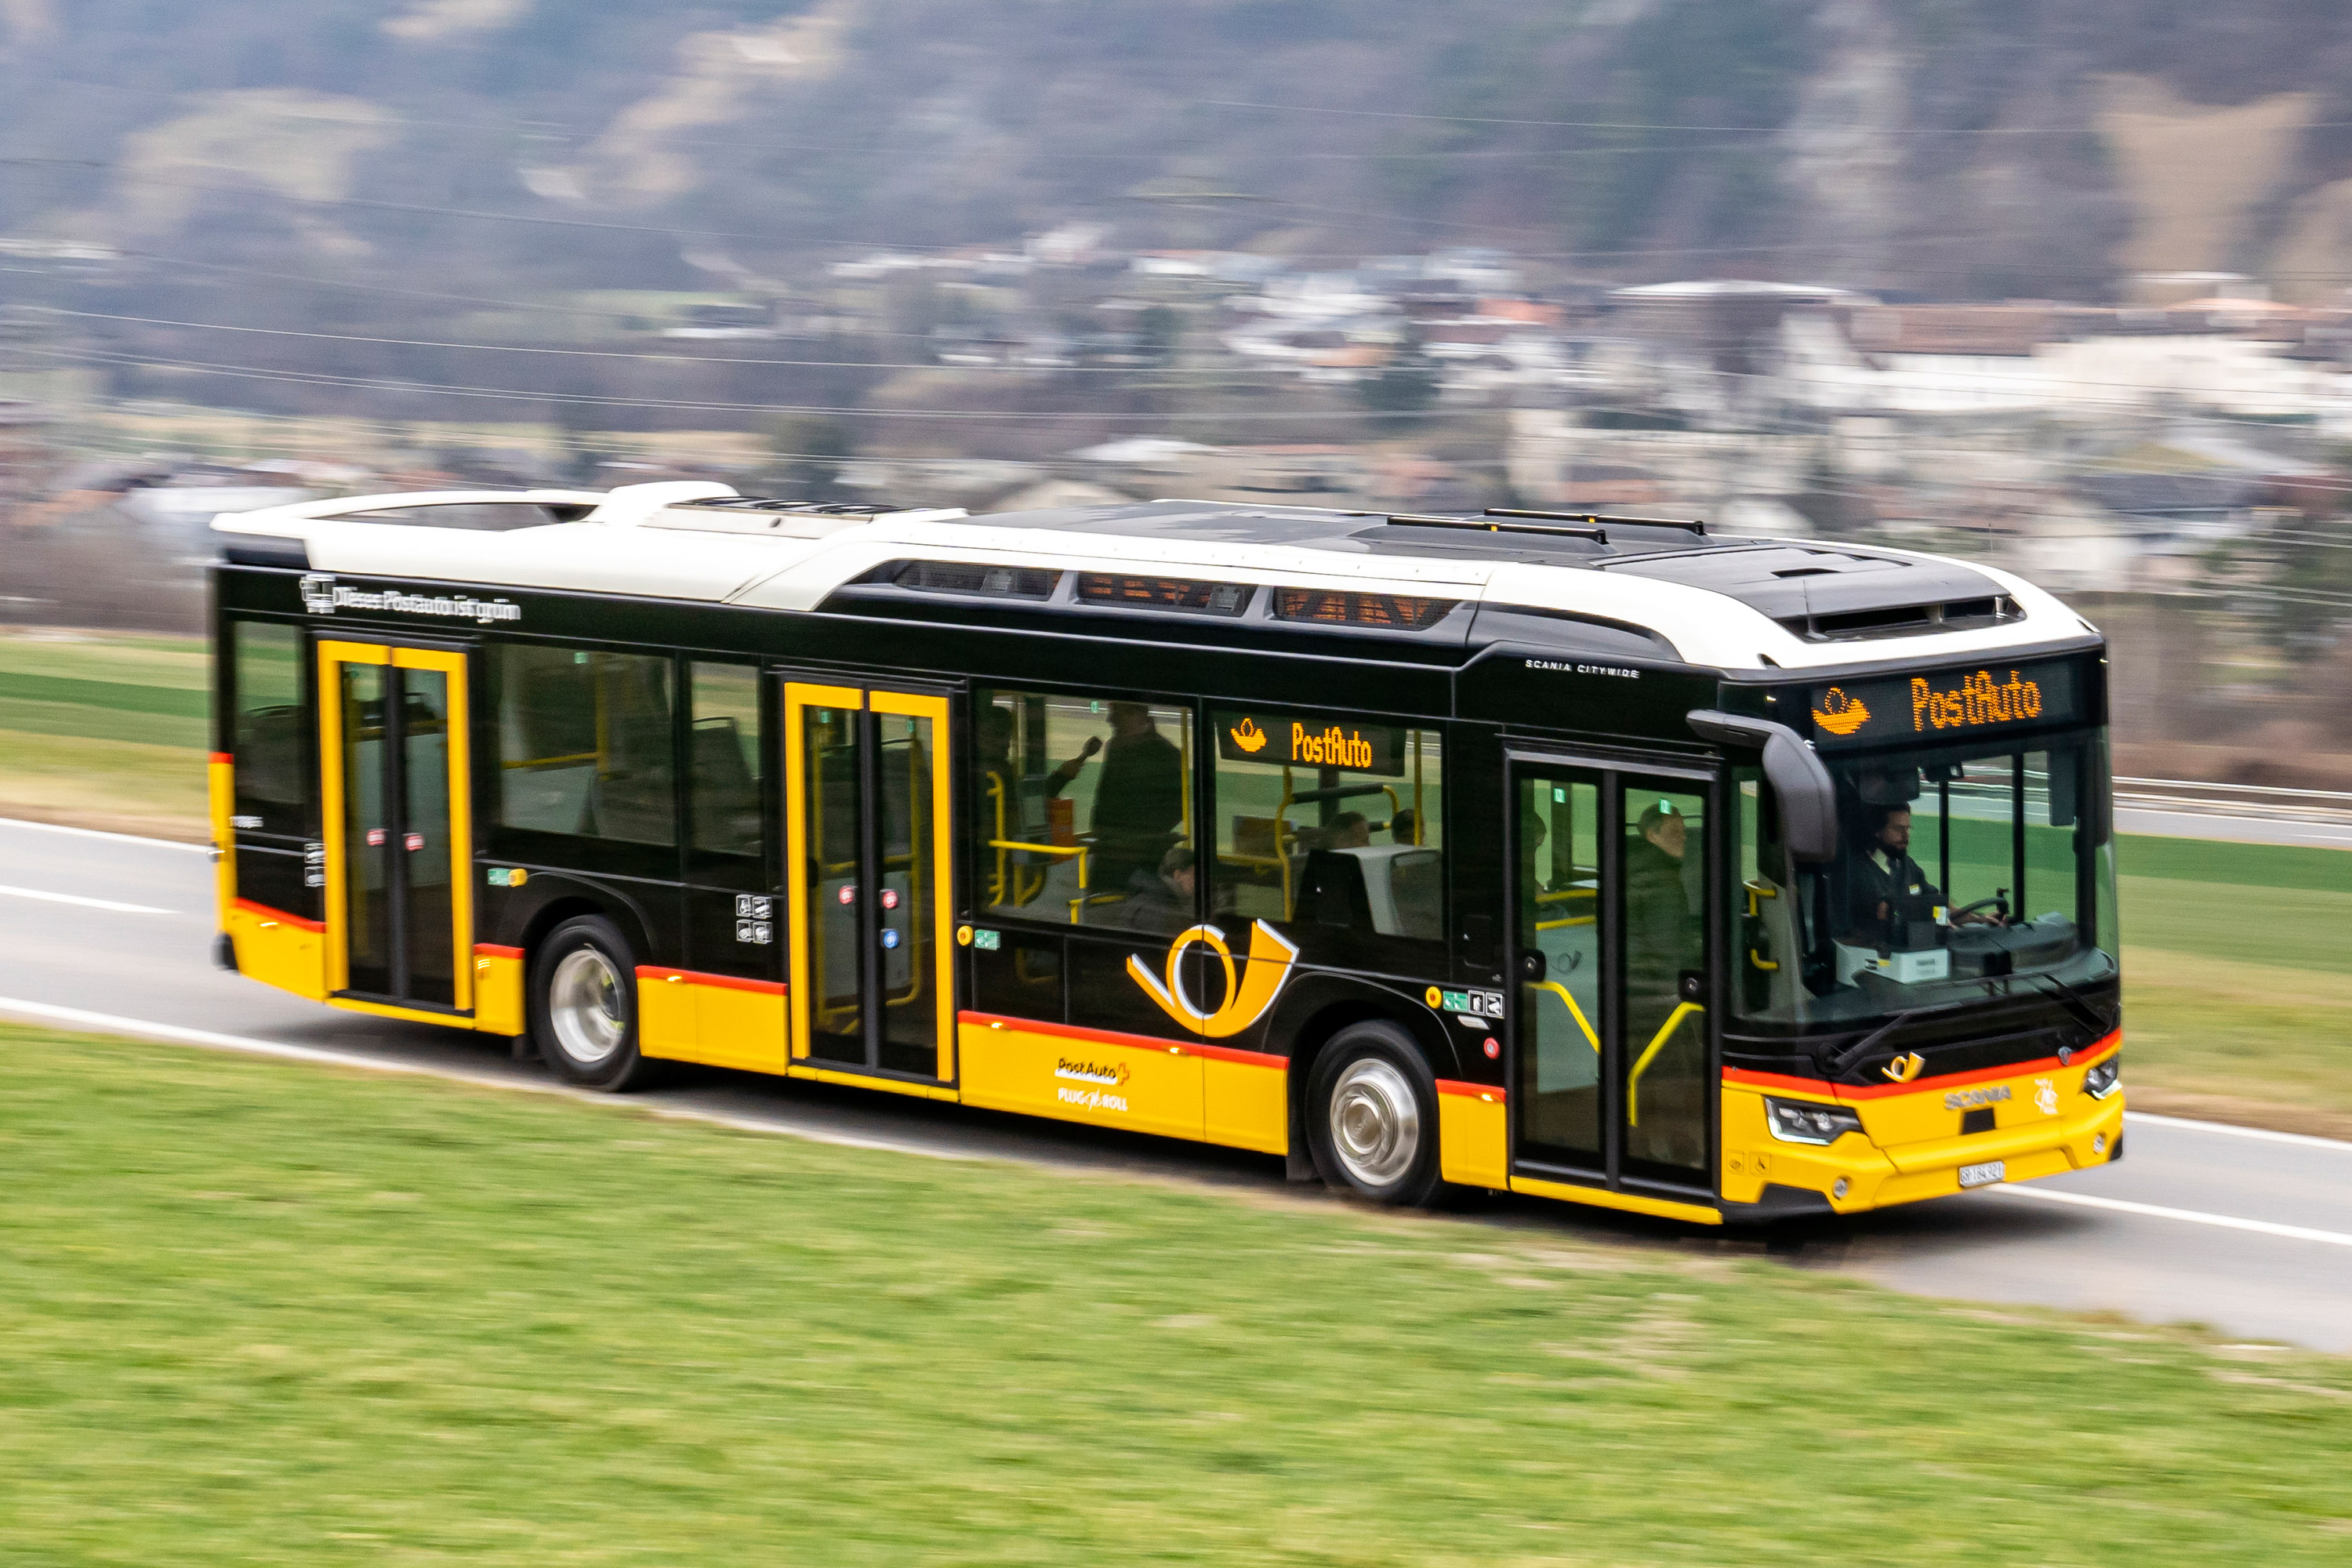 PostAuto Graubünden Scania TIR transNews